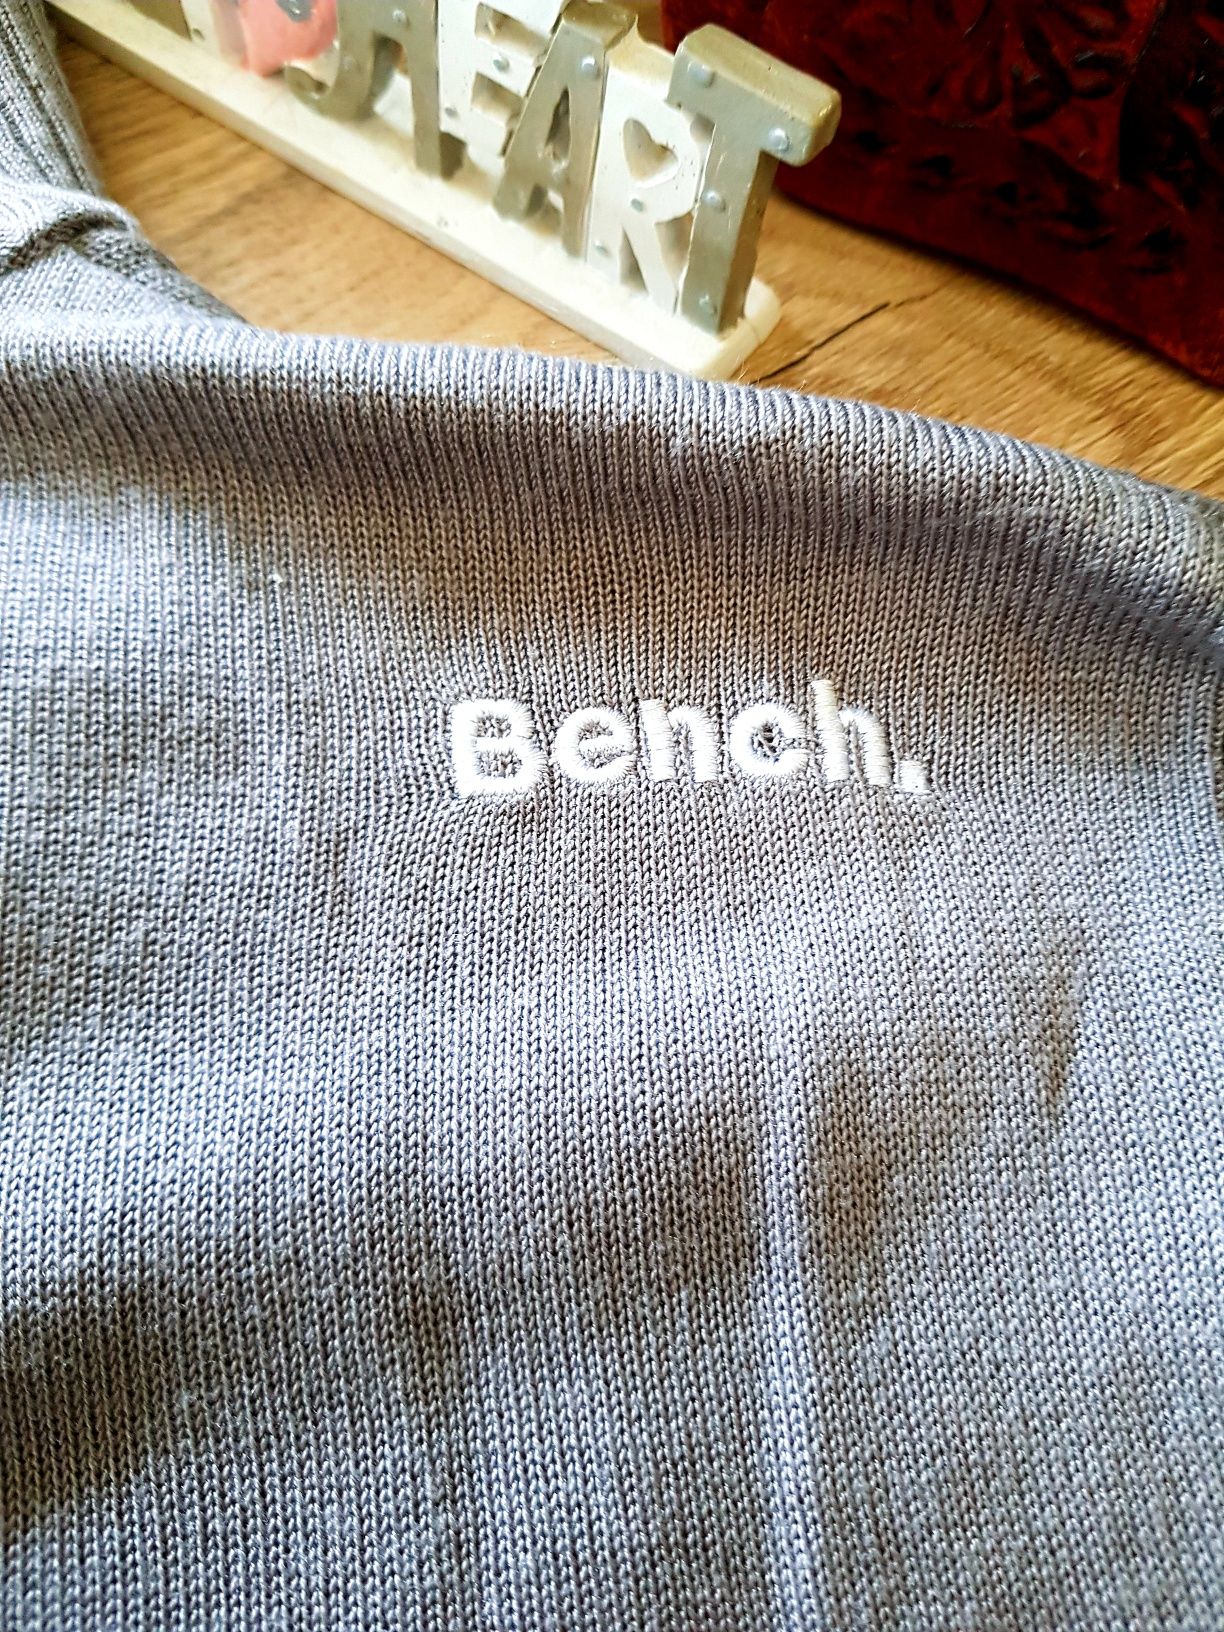 Sweter bluza z Londynu  marki Bench roz L. Nowa.